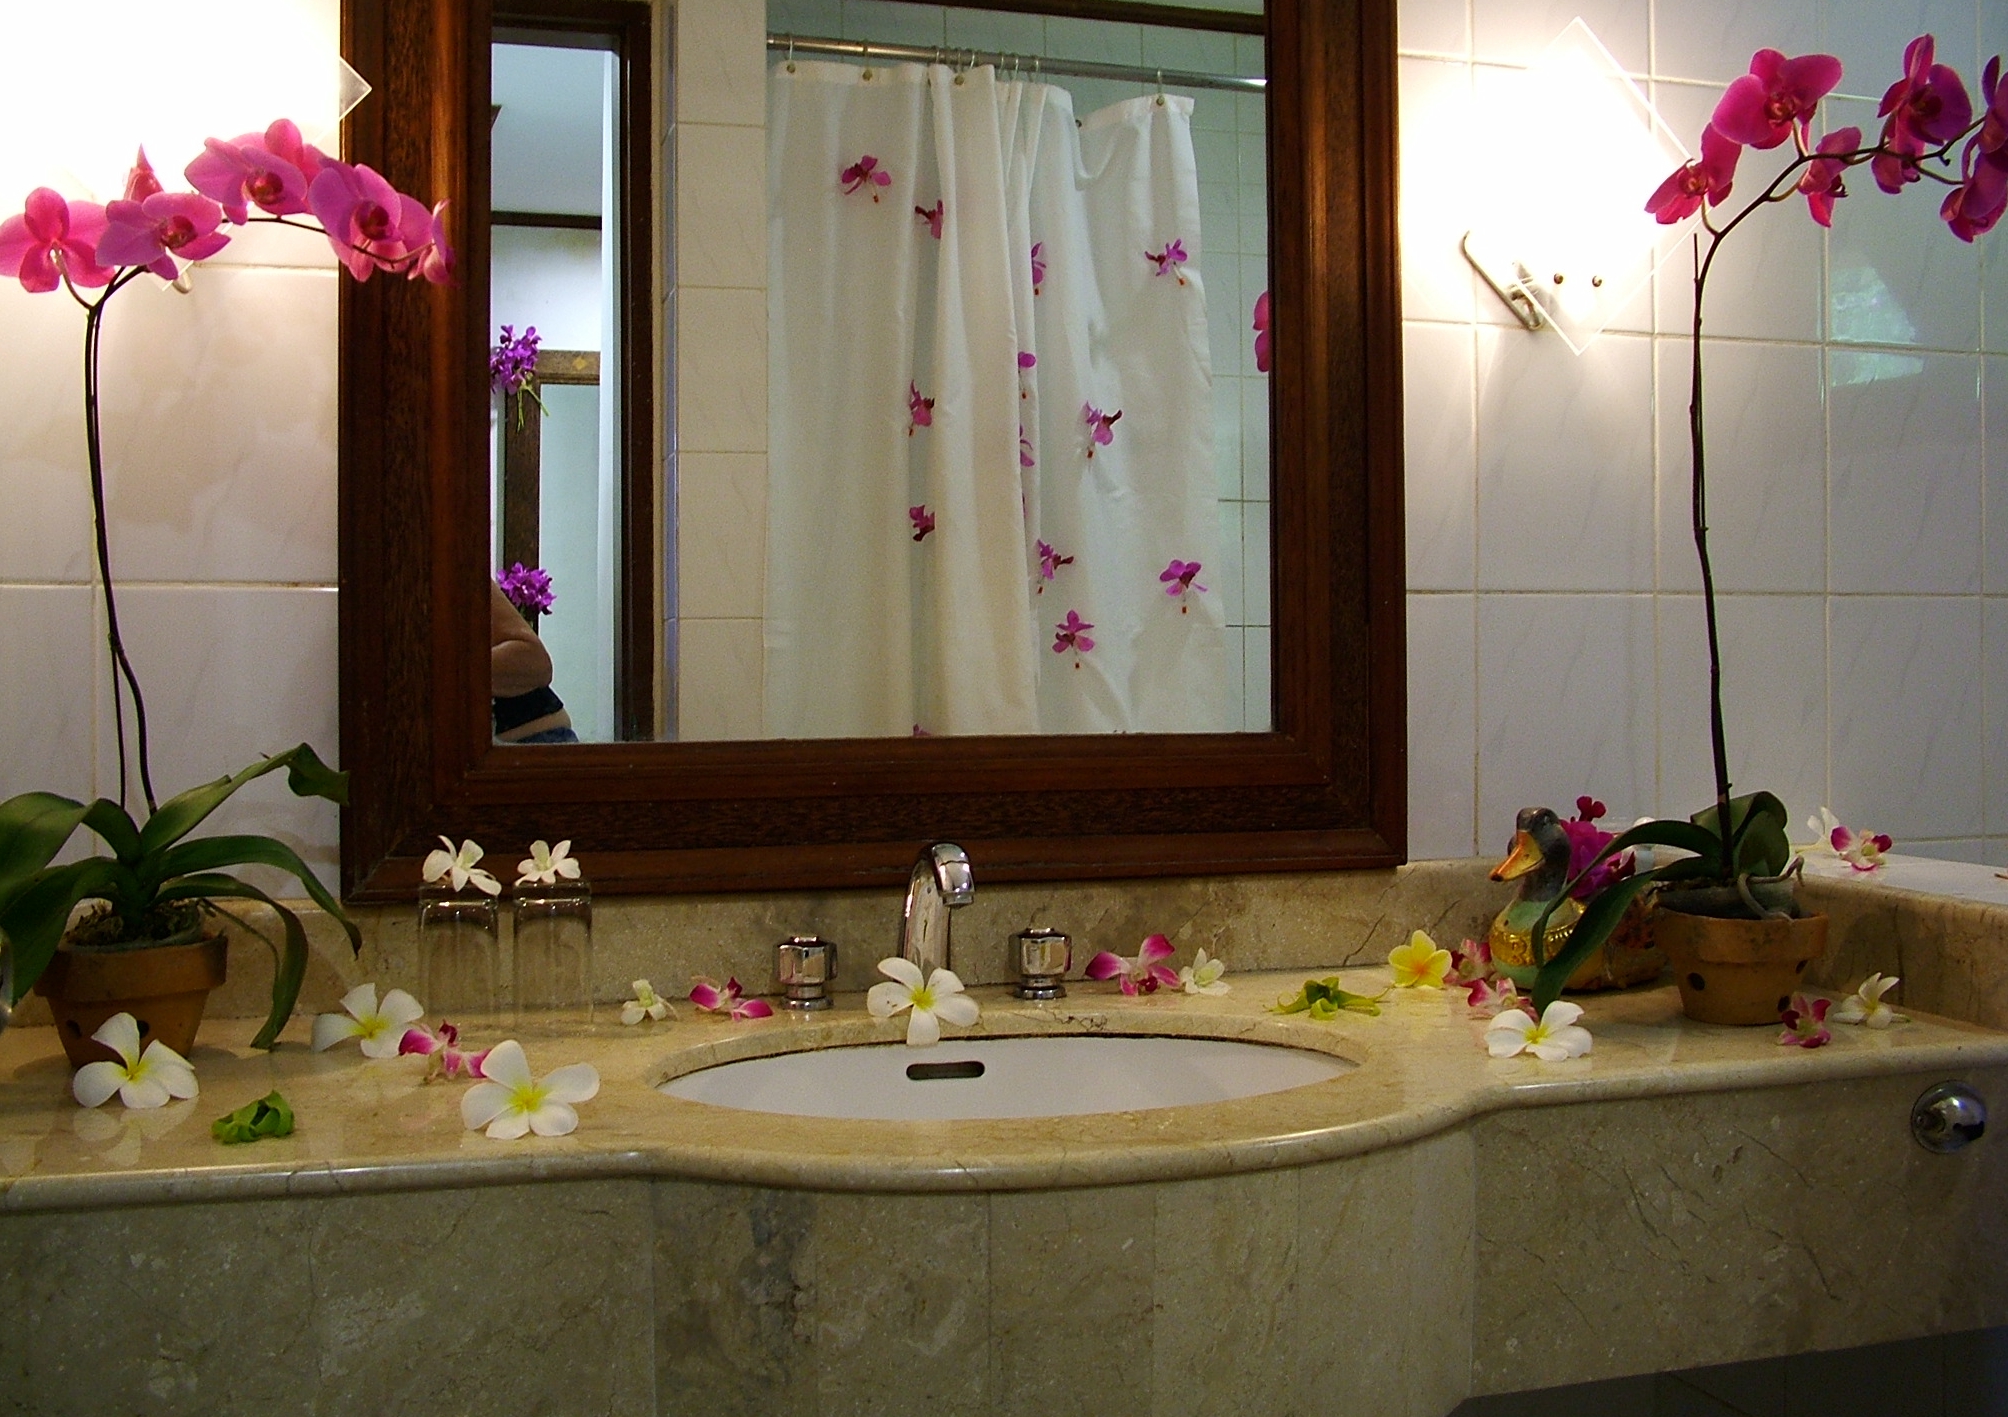 Прикрасити стіни у ванній кімнаті;   Прикрасити дзеркало у ванній кімнаті;   Прикрасити підлогу в ванній кімнаті;   Прикрасити полки у ванній;   Прикрасити вікно у ванній кімнаті;   Прикрасити двері ванної